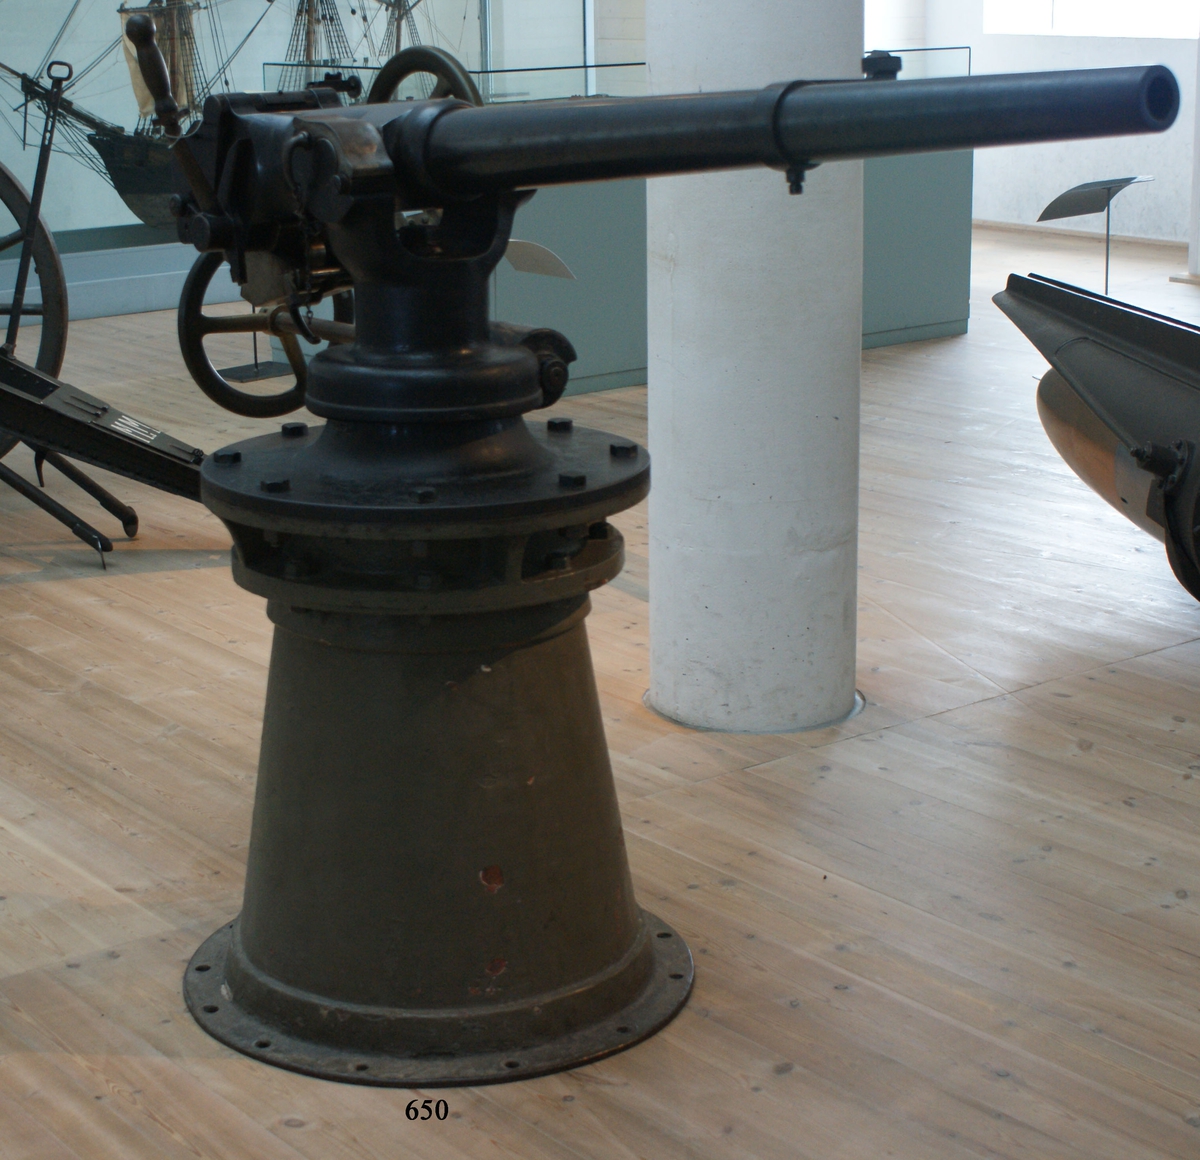 38 mm maskinkanon m/84 med lavett. Kanonen är märkt "Nordenfelt 1 1/2 in. nr 4104. Material: stål med stålmantel.